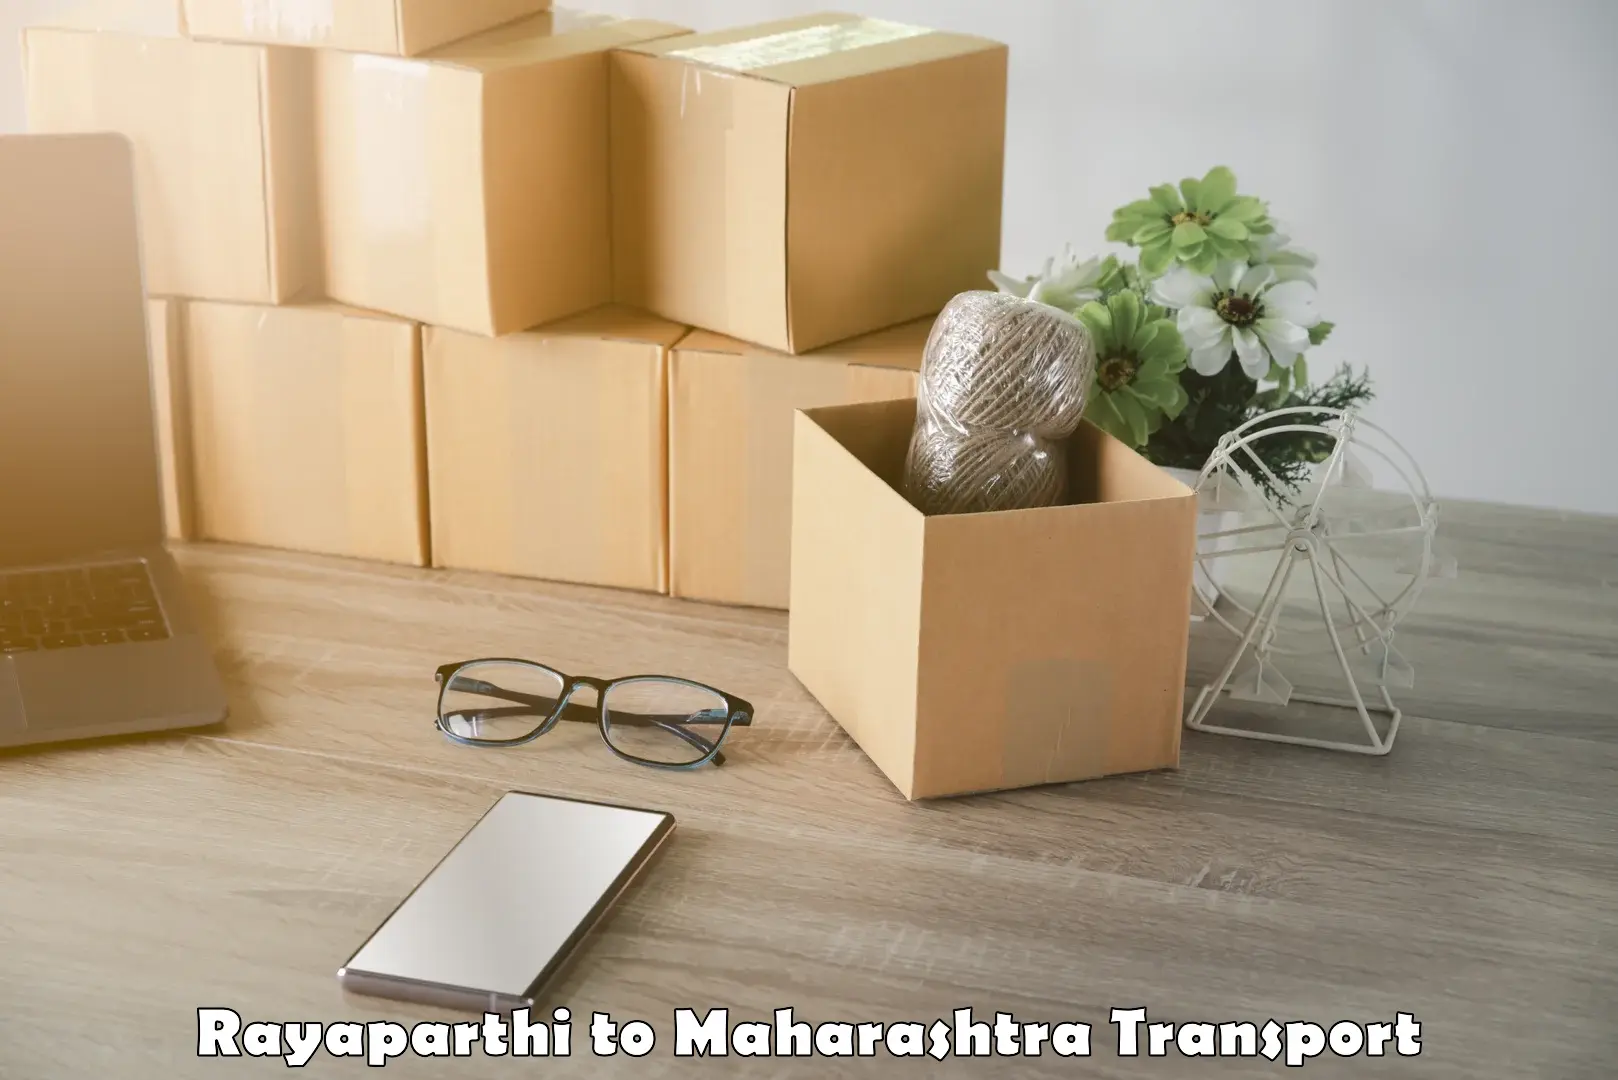 Pick up transport service Rayaparthi to Mahabaleshwar